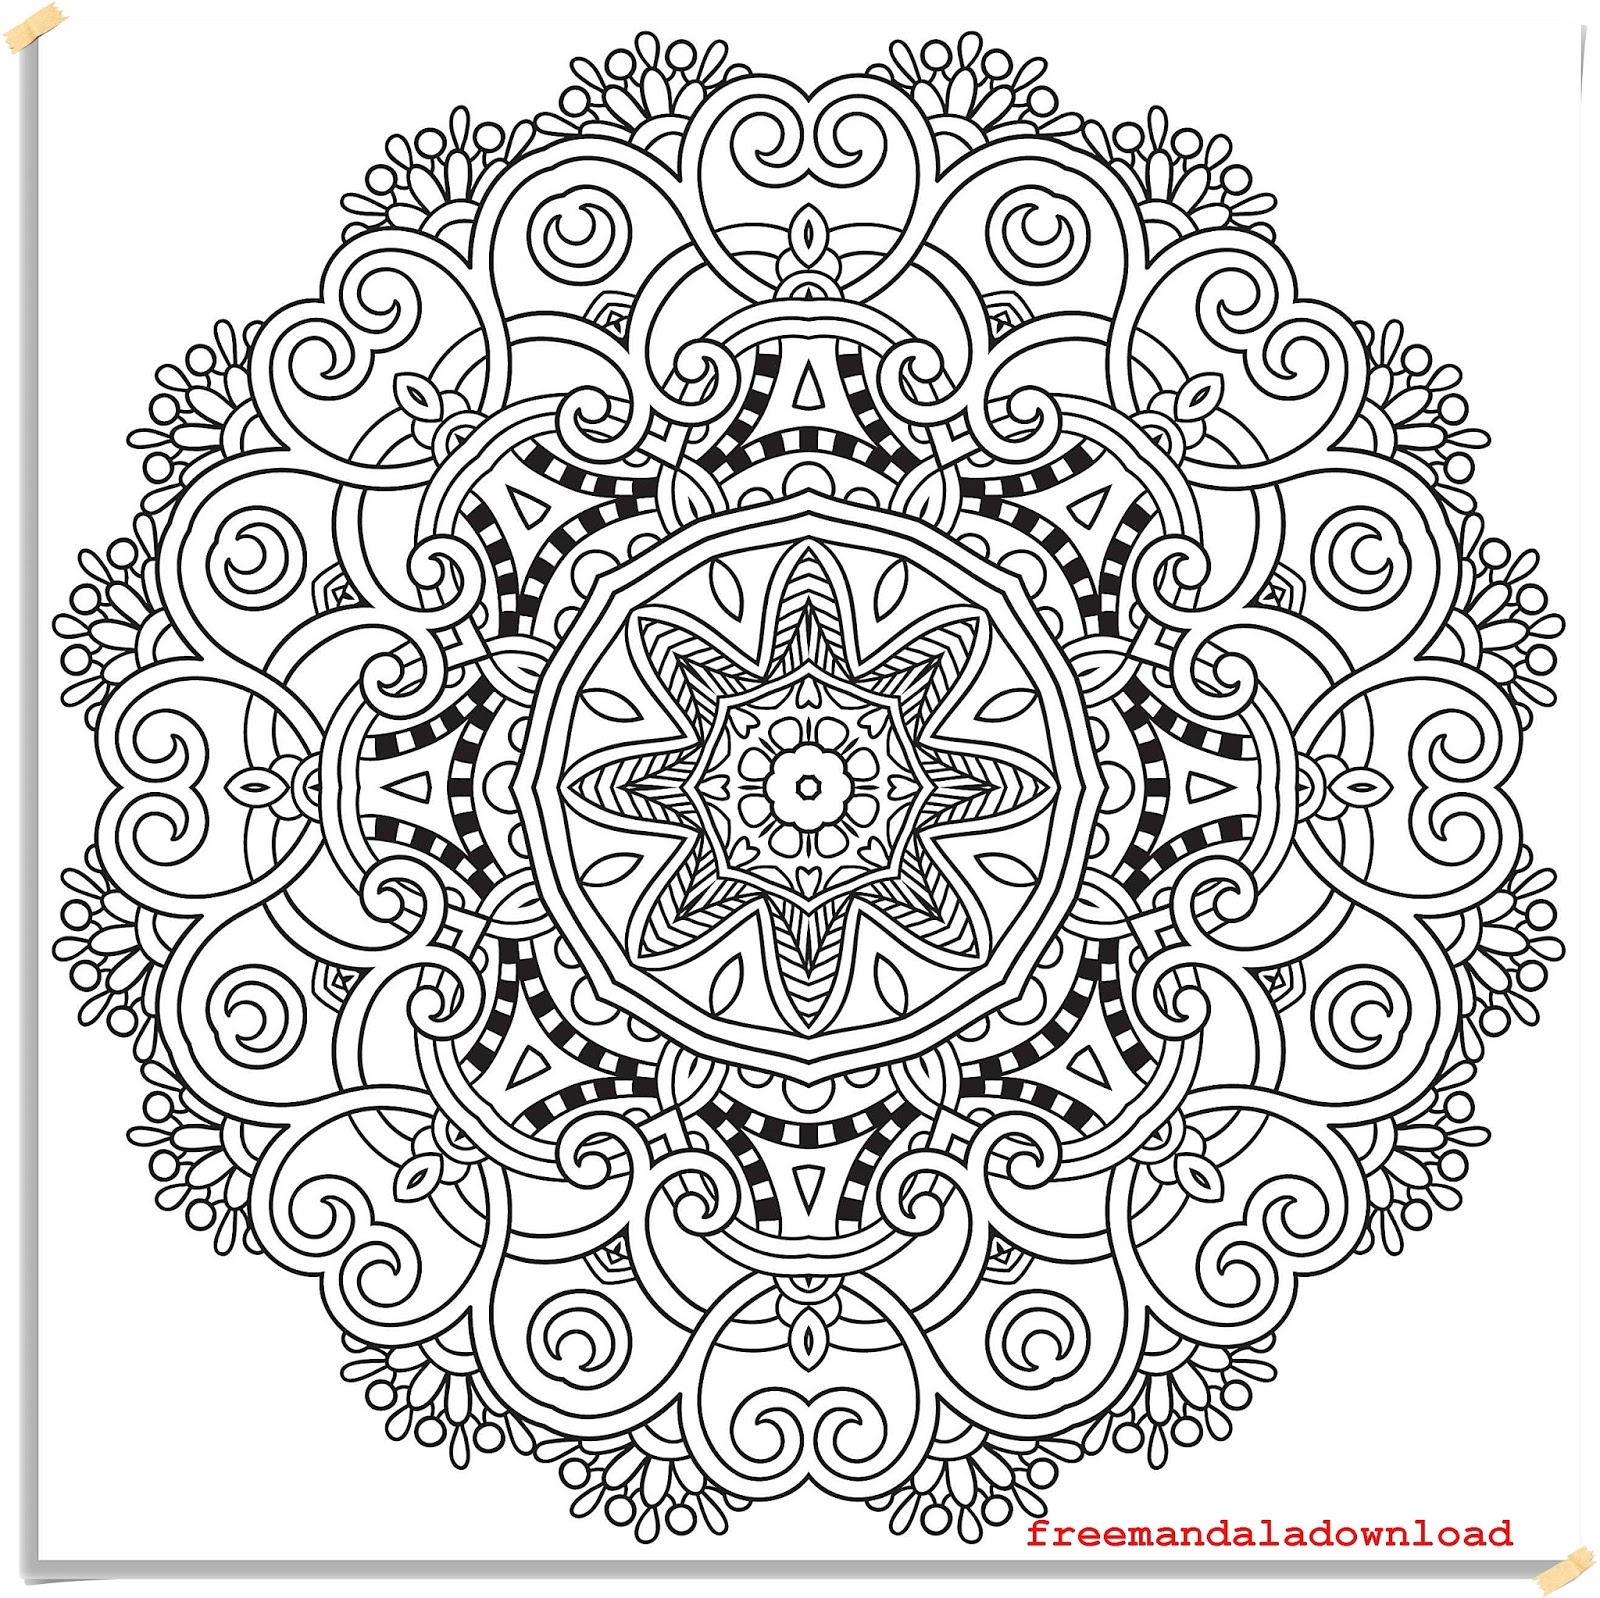 Download Farbe nach Anzahl Mandalas-Color By Number Mandalas - Free Mandala